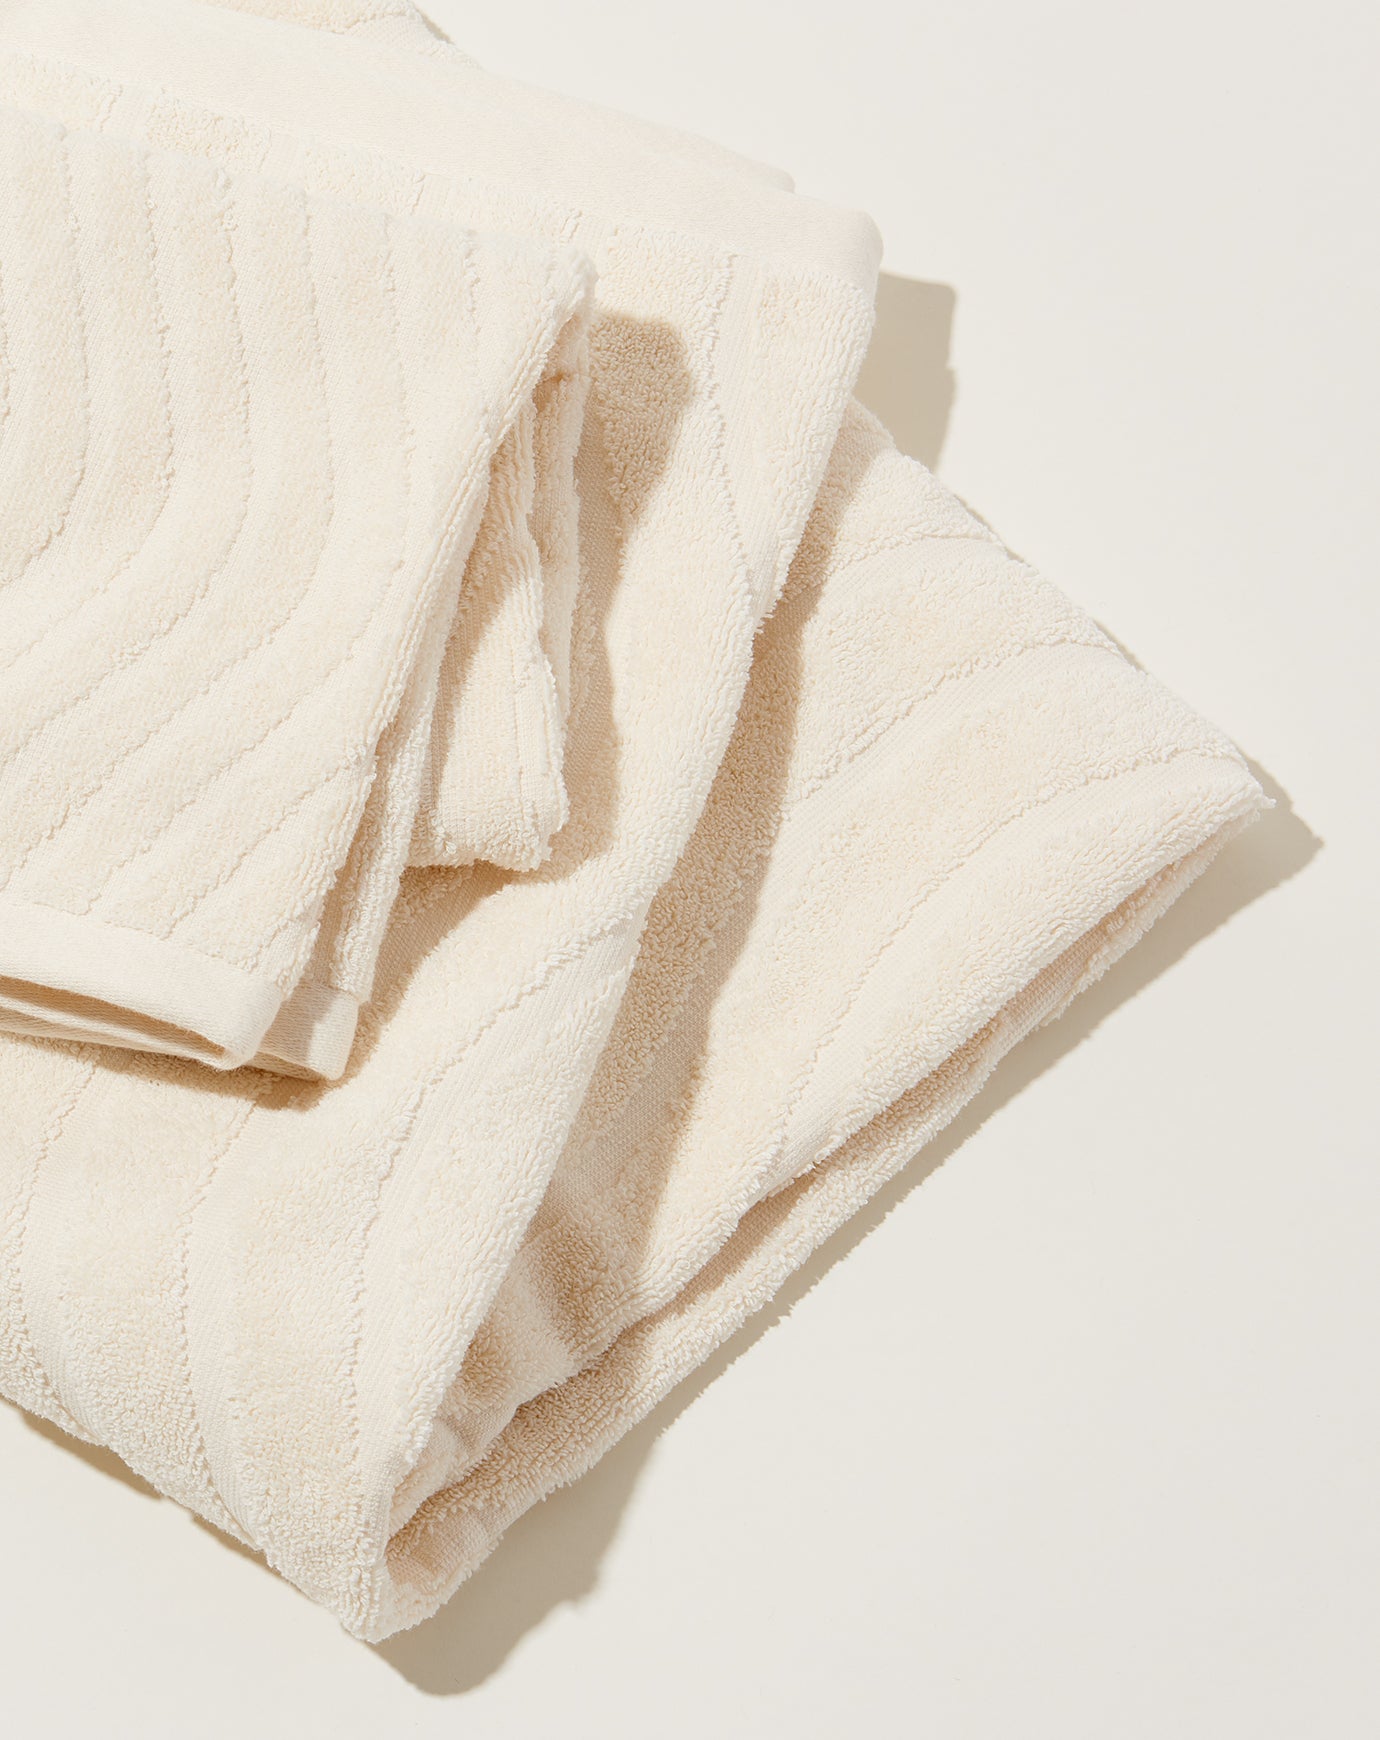 Shop BAINA, ST CLAIR Organic Cotton Bath Towel